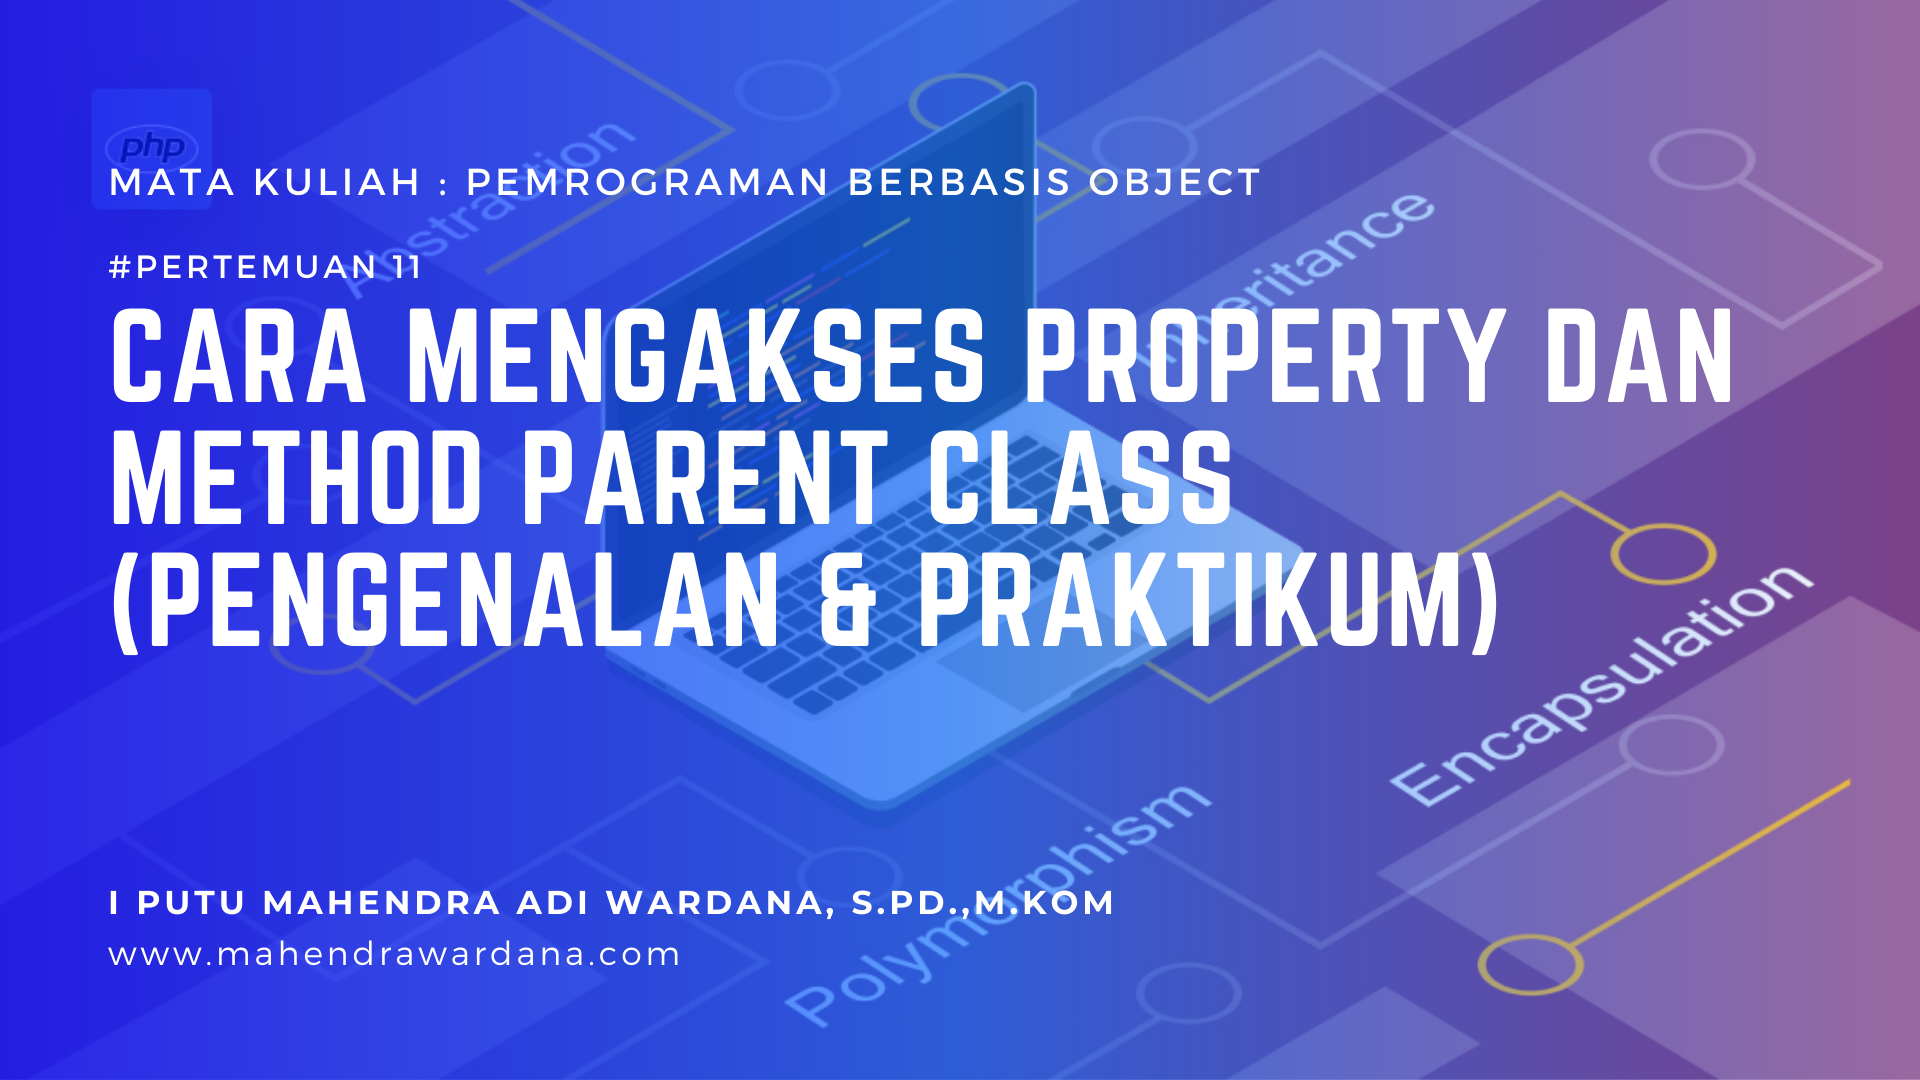 Pertemuan 11 - Cara Mengakses Property dan Method Parent Class (Pengenalan & Praktikum)